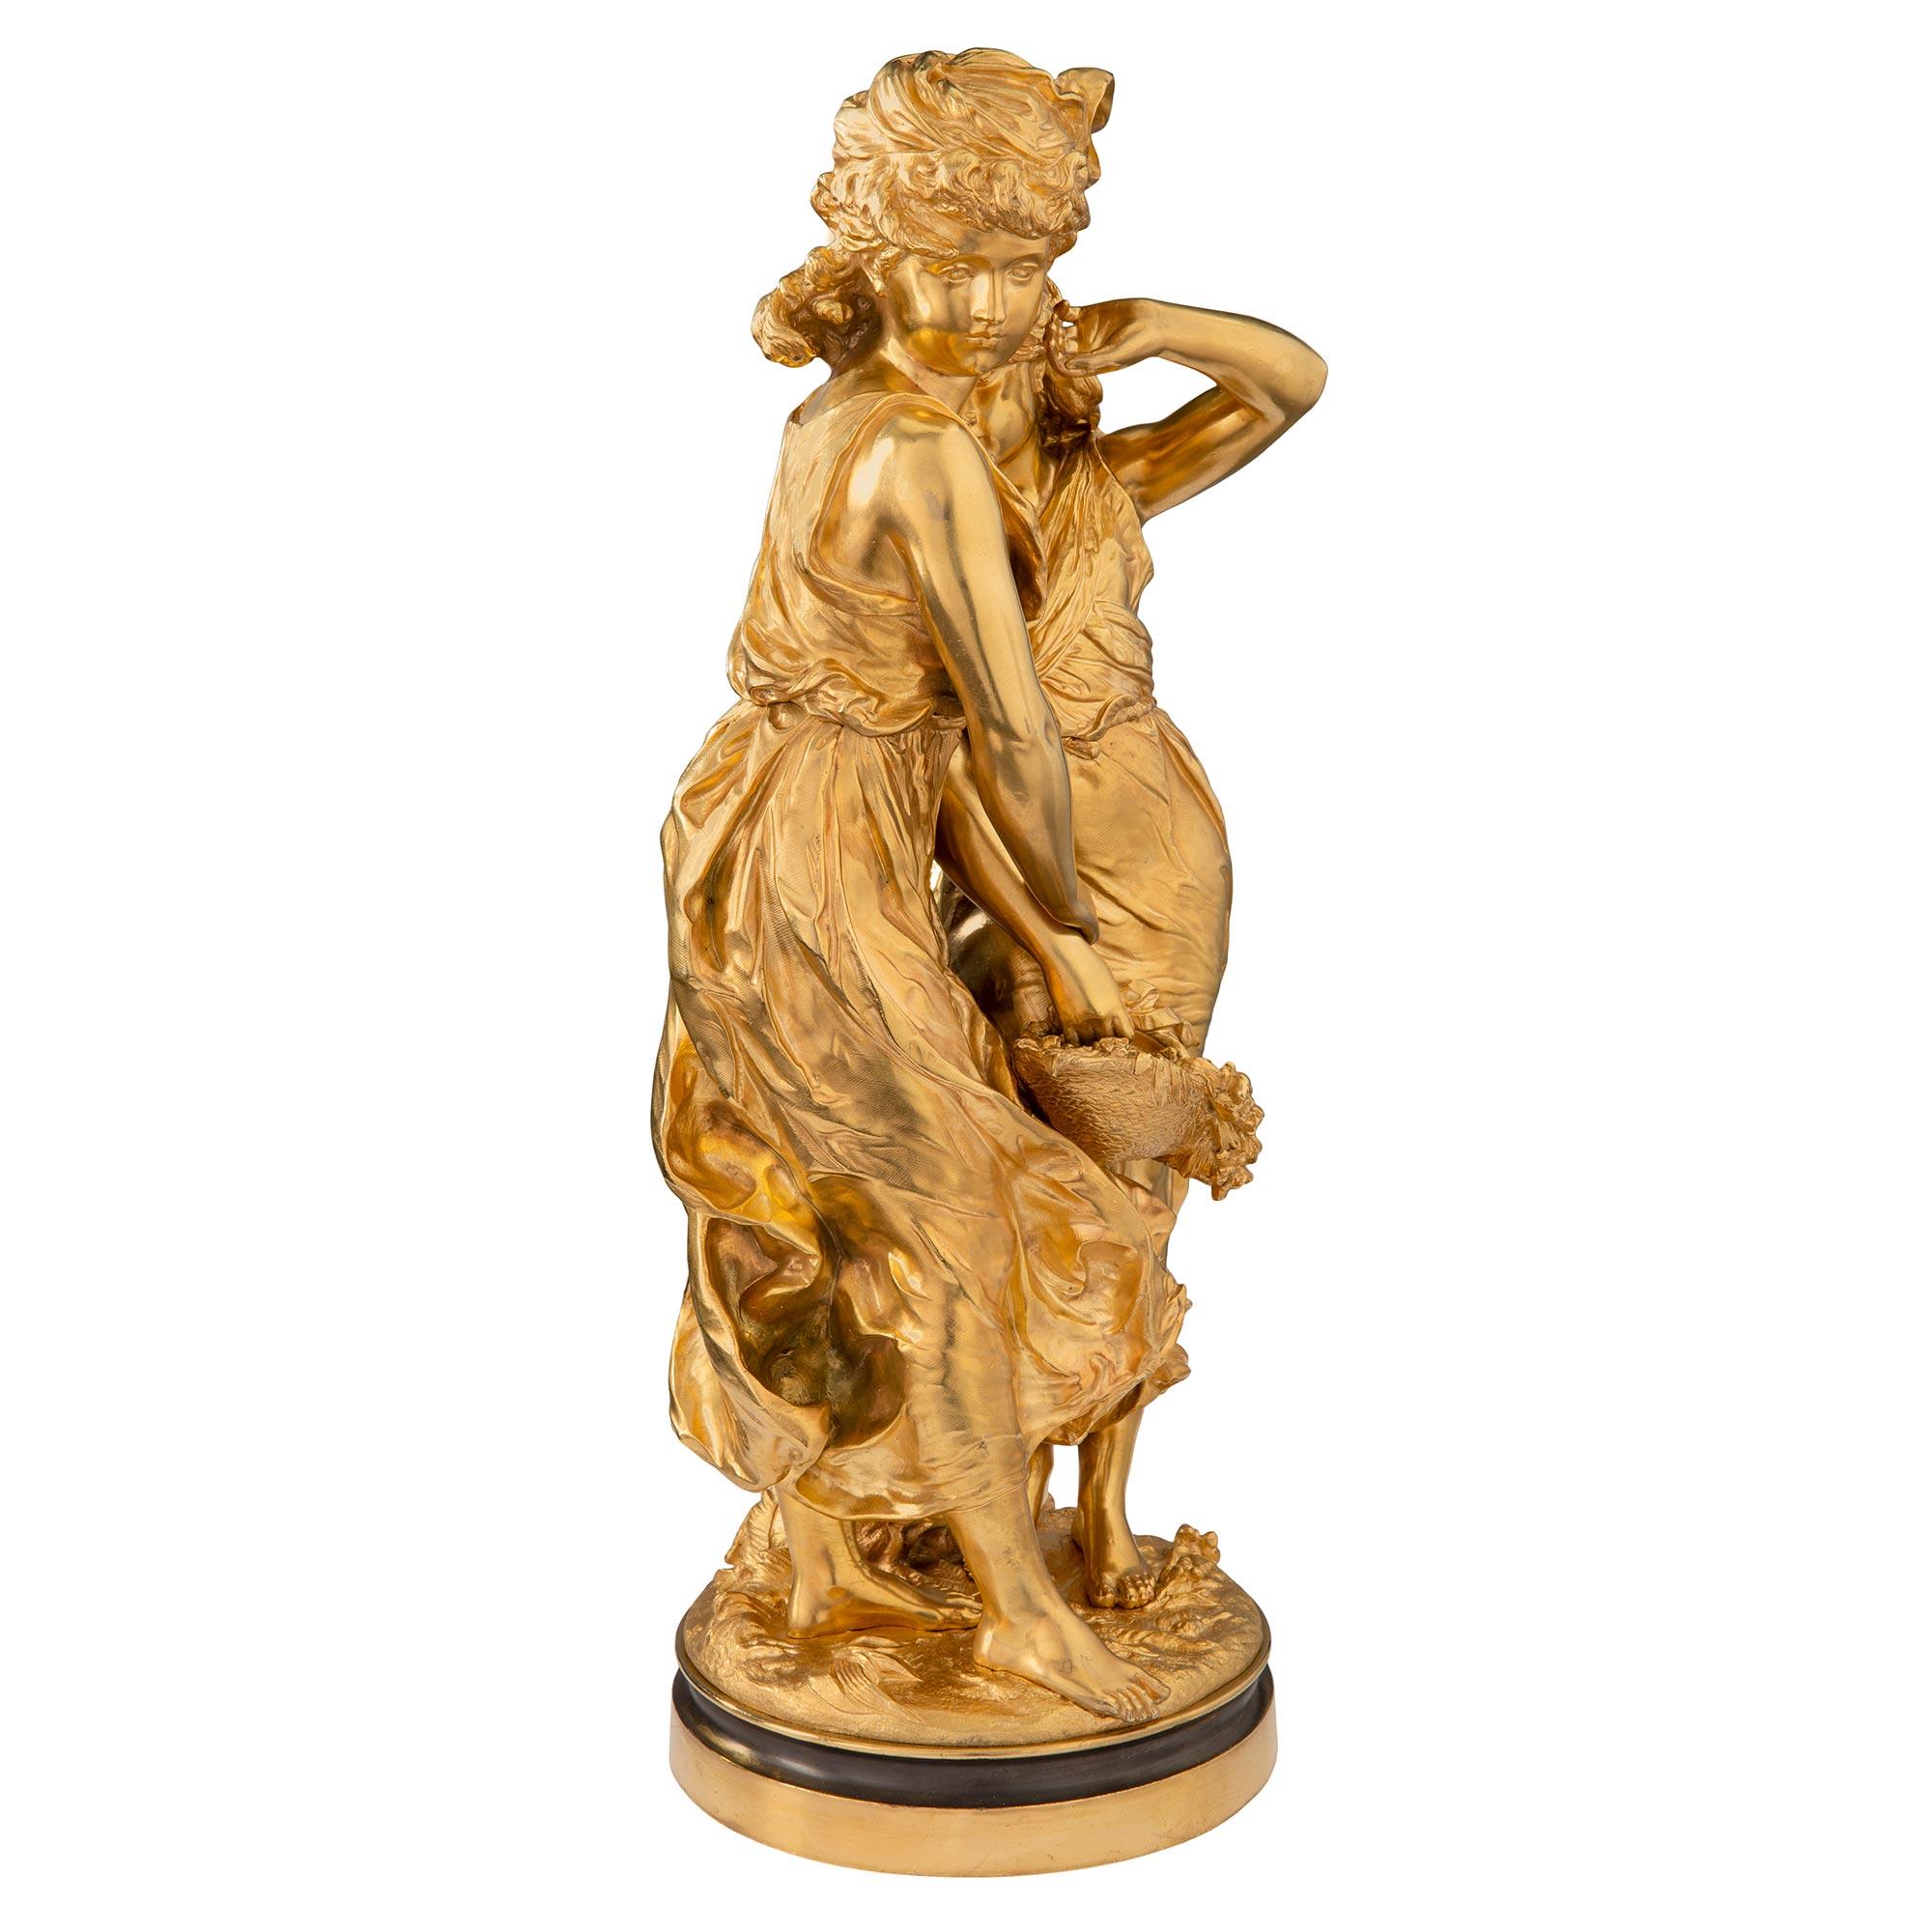 Eine schöne und hohe Qualität Französisch 19. Jahrhundert Louis XVI st. Ormolu Statue von zwei schönen Mädchen unterzeichnet Moreau. Die Statue steht auf einem feinen, kreisrunden, gesprenkelten Sockel mit einem außergewöhnlichen Bodenmuster. Oben